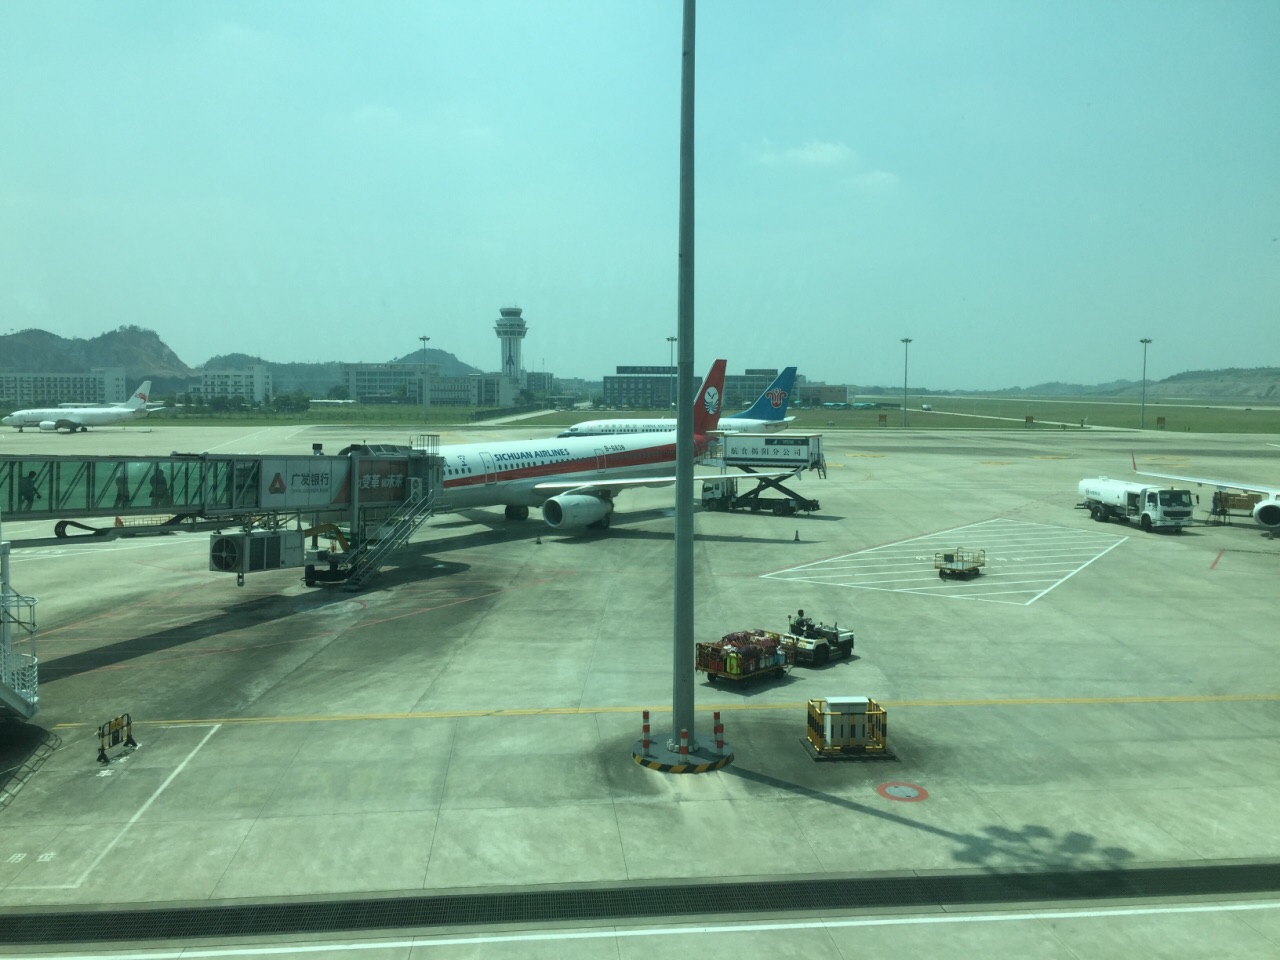 揭阳潮汕机场,是揭阳,潮州,汕头共同使用的机场,规模还可以,够一般的